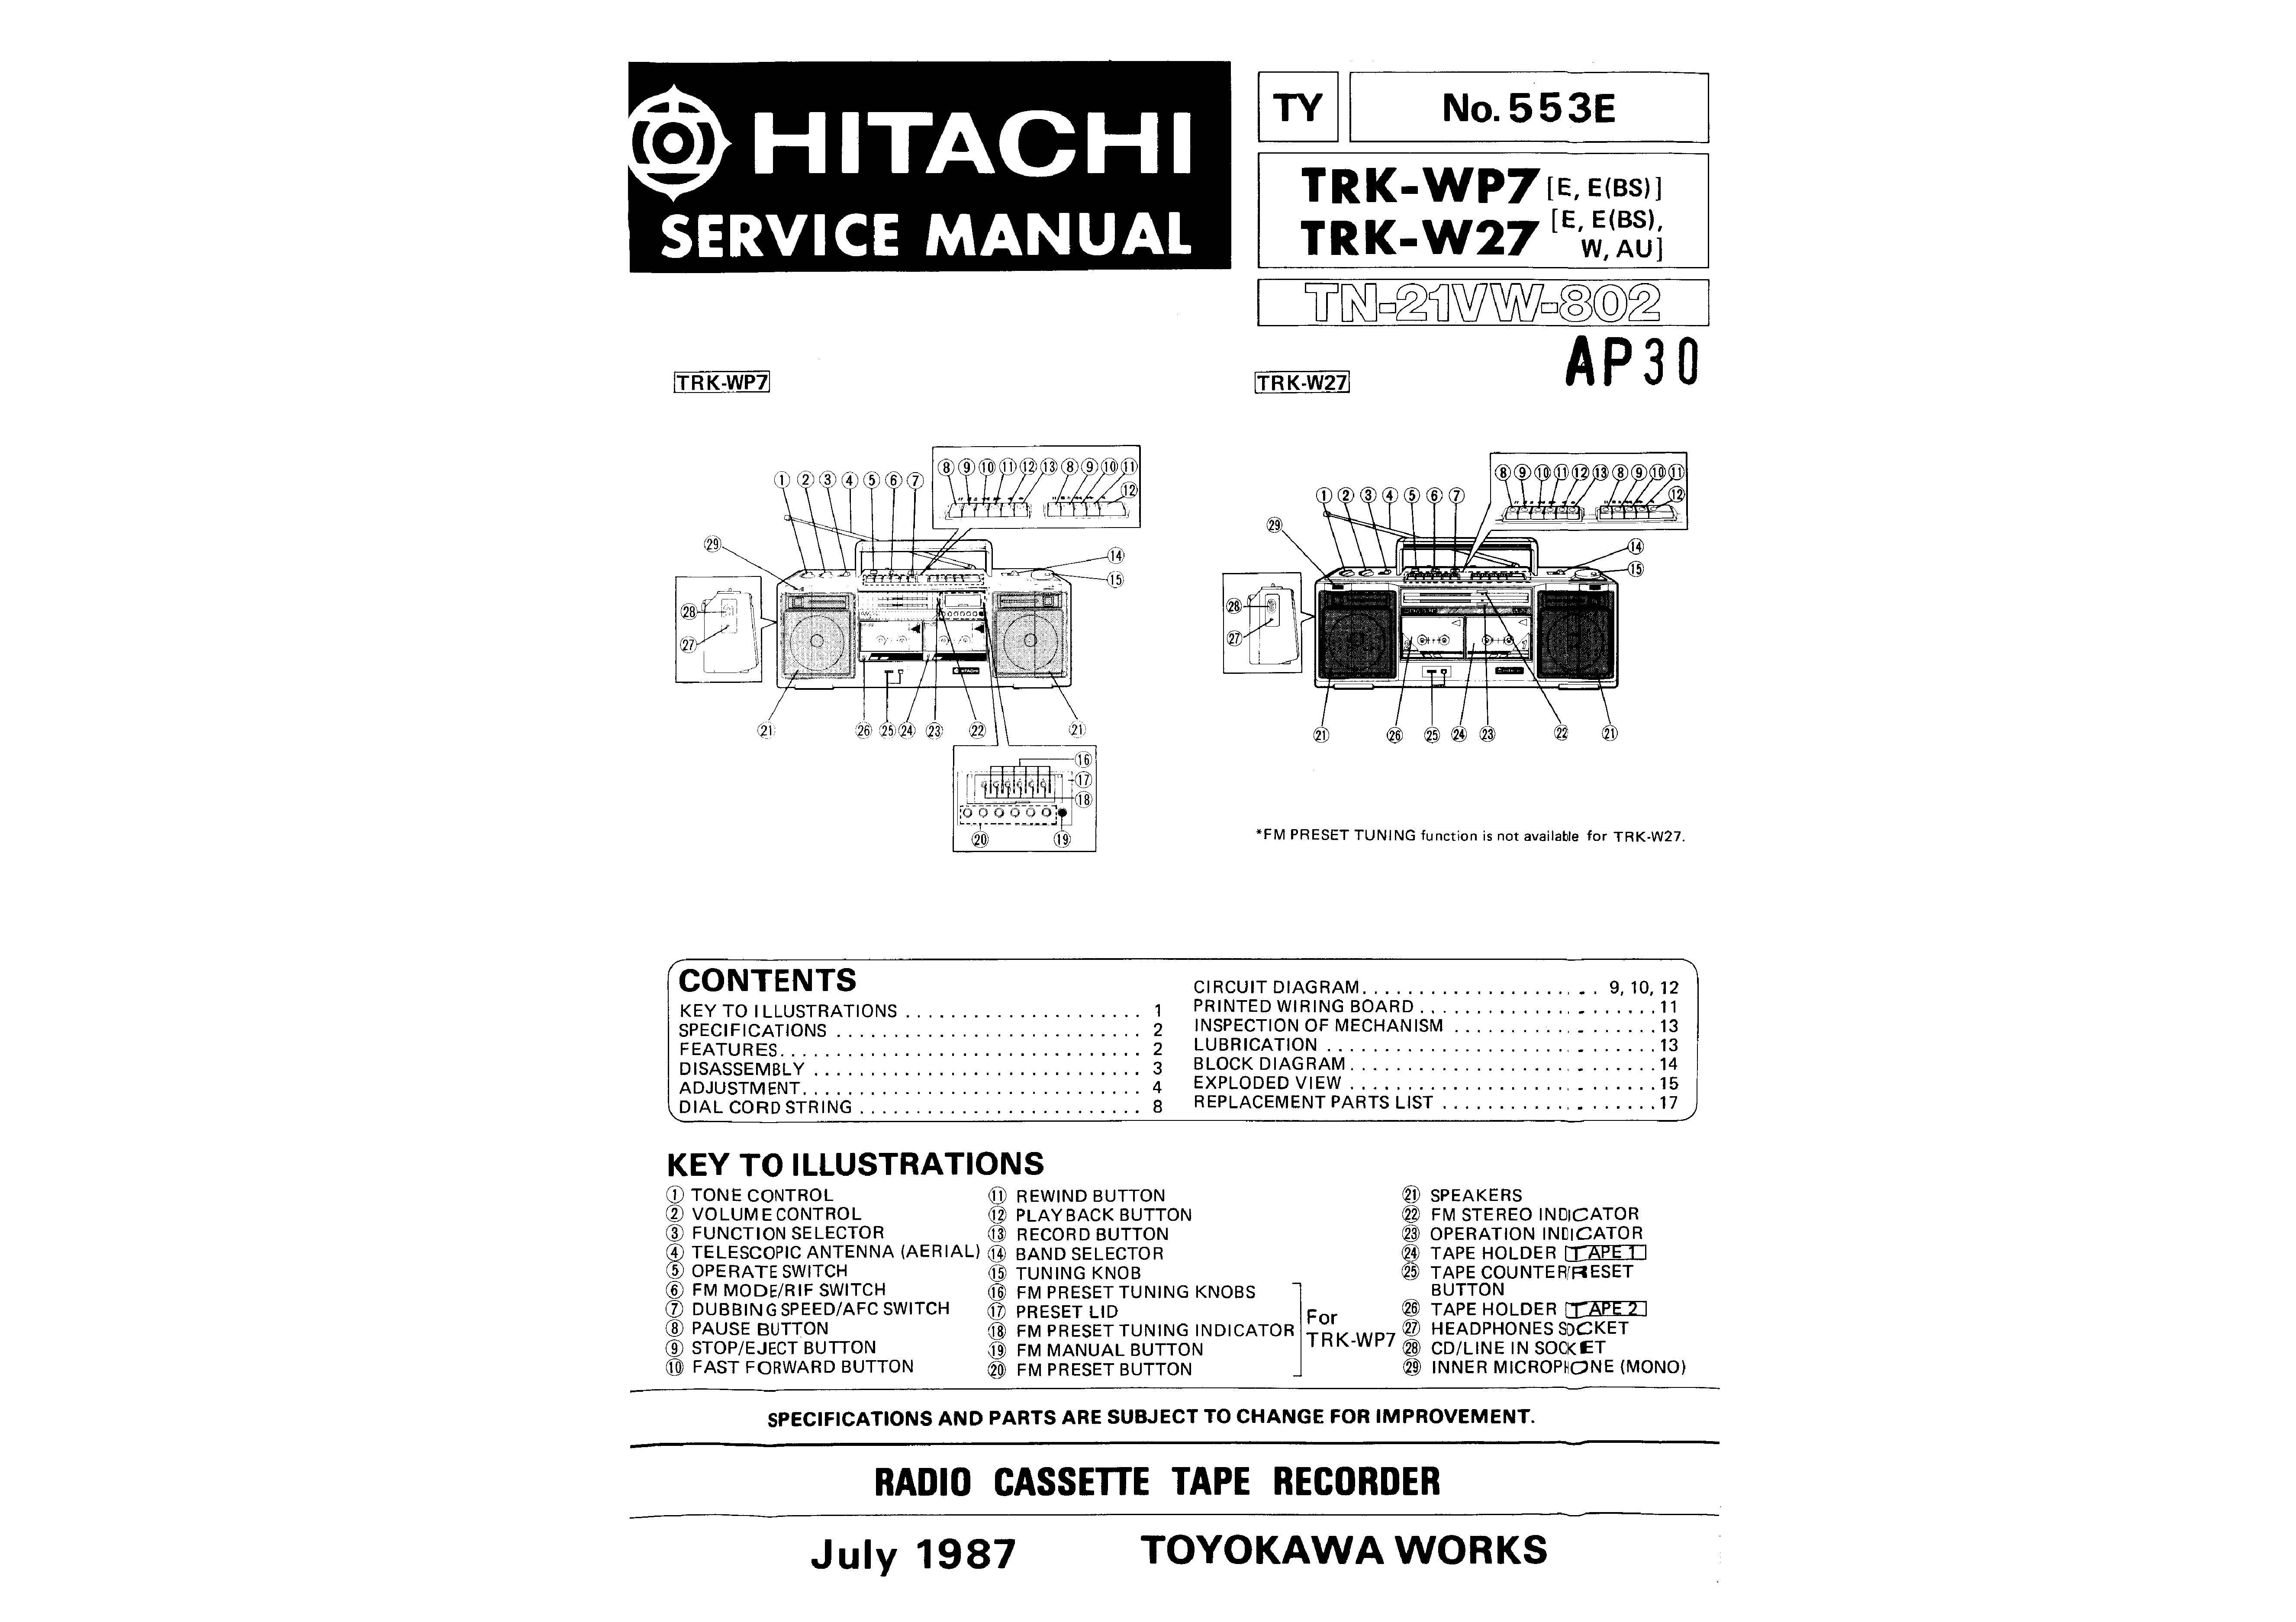 Hitachi TRK-W27